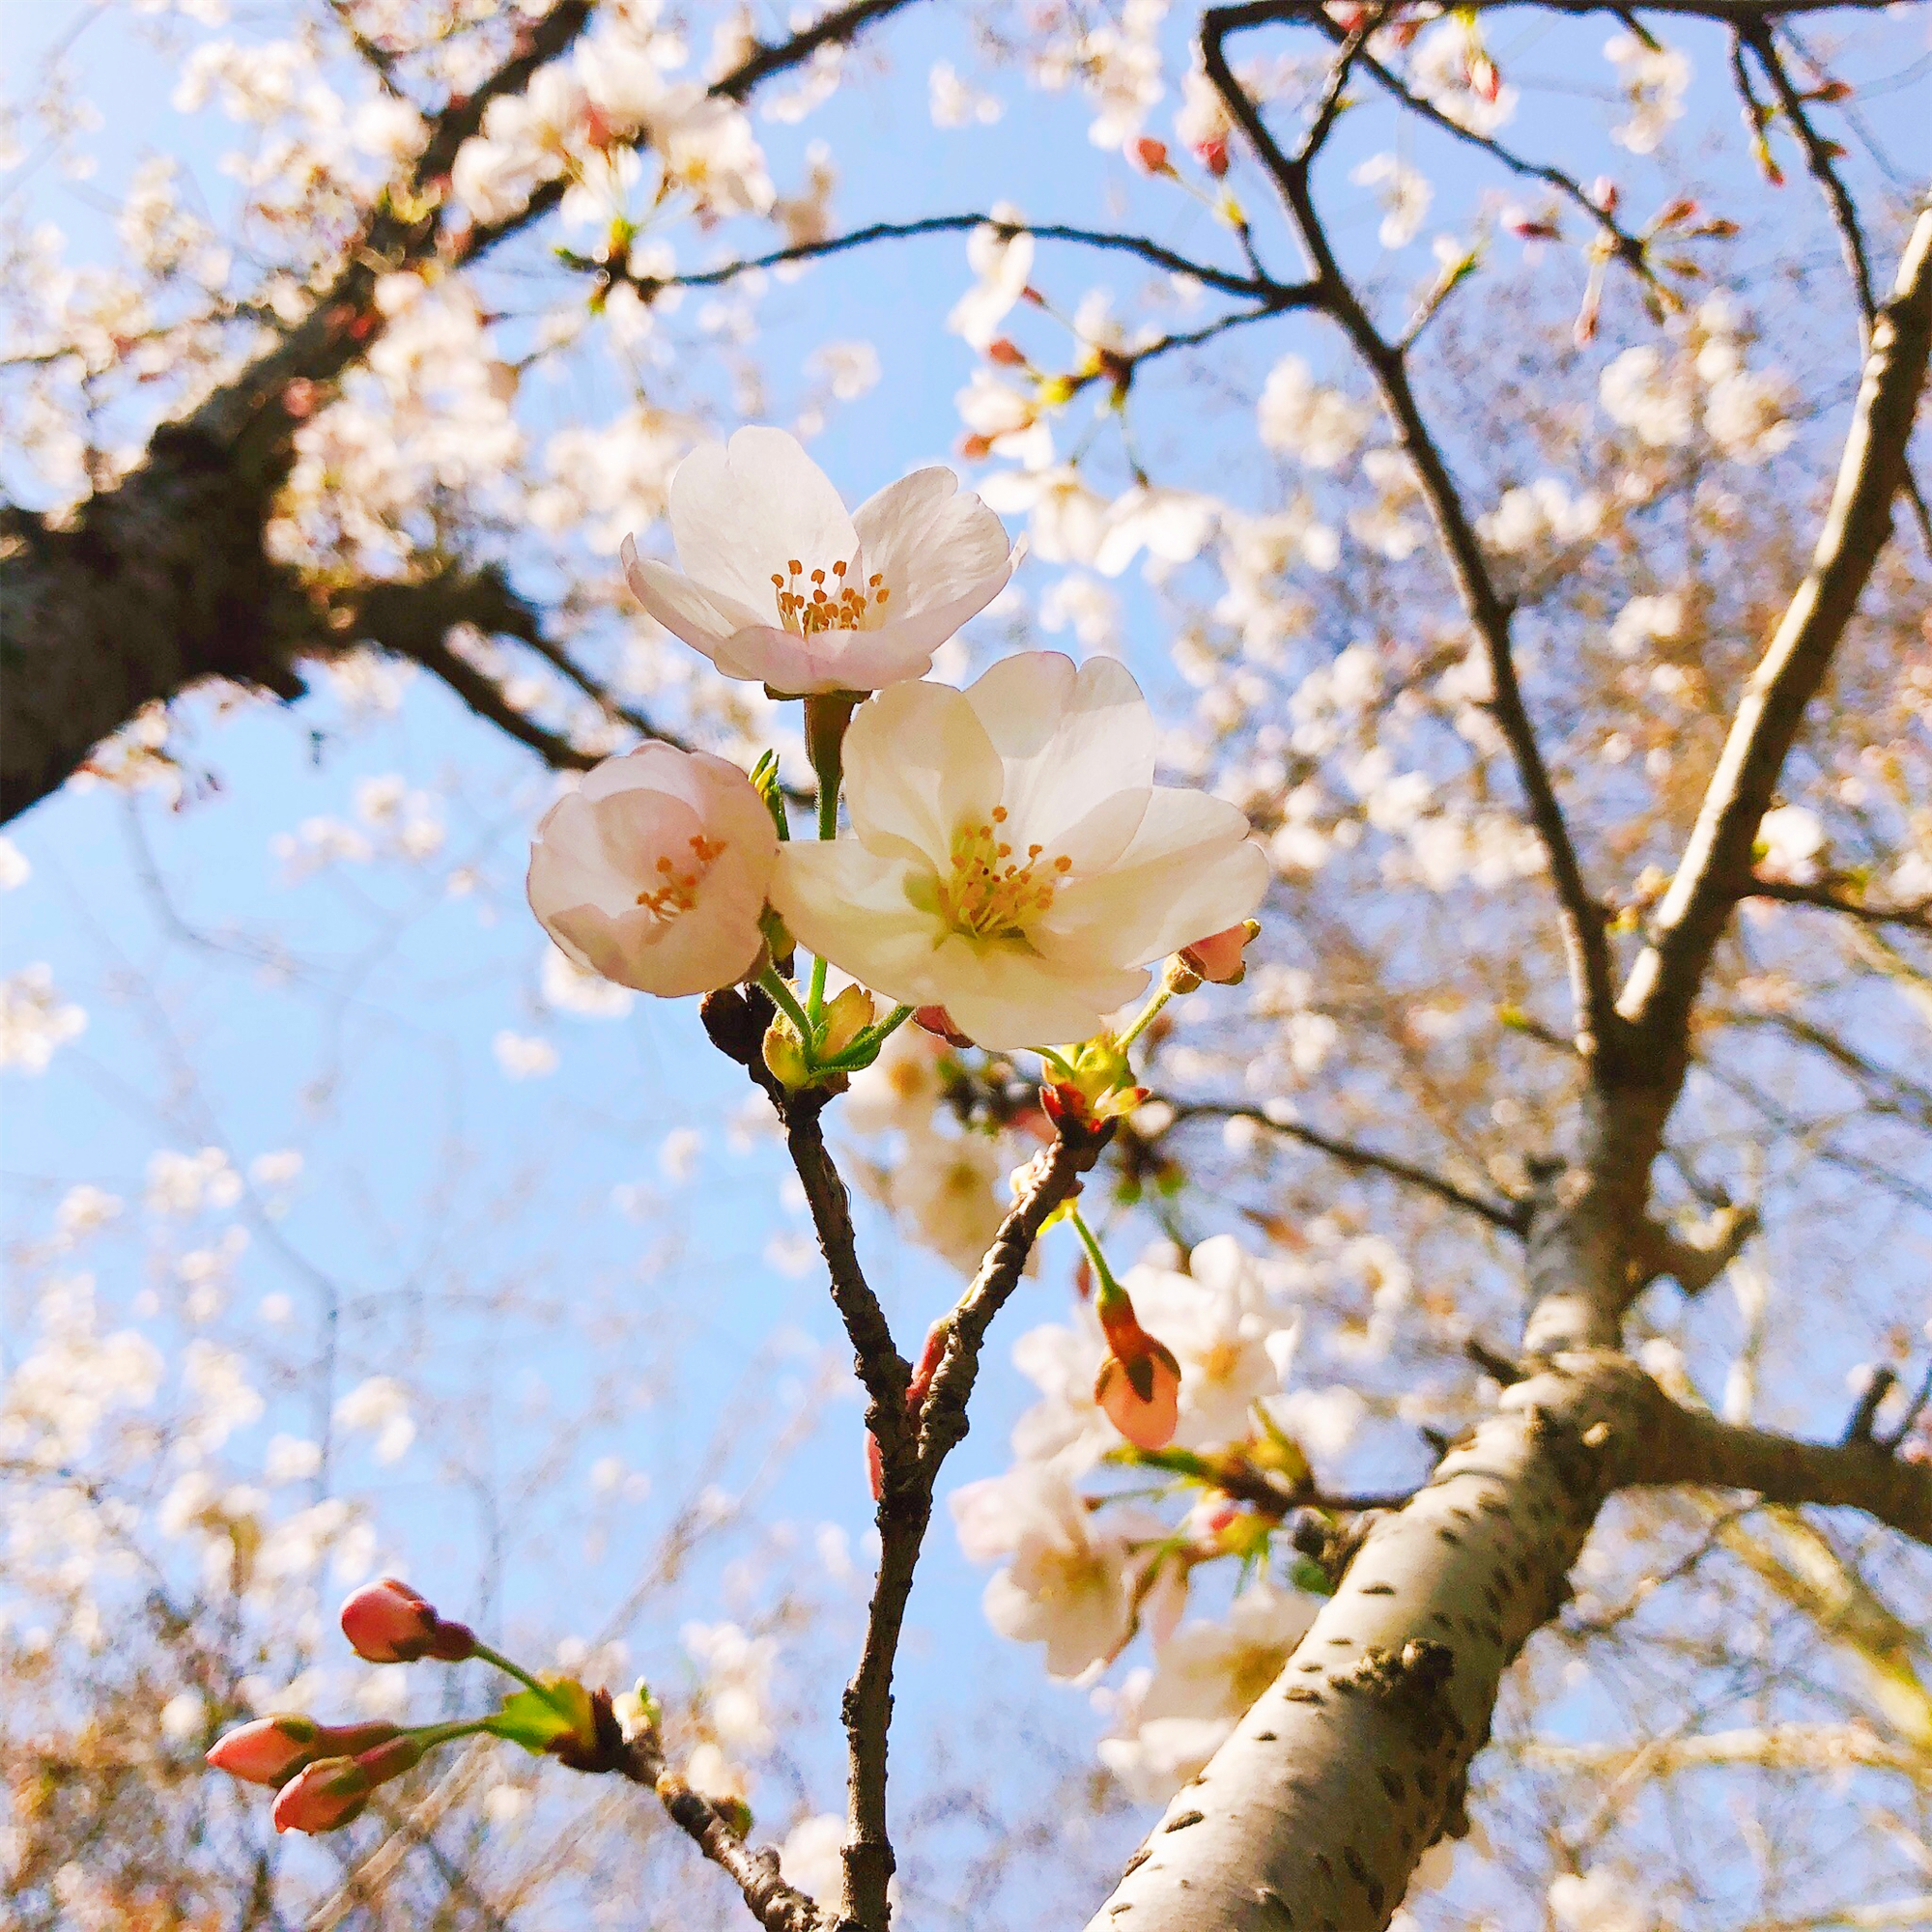 共青森林公园染井吉野樱盛放迎来最佳赏樱季